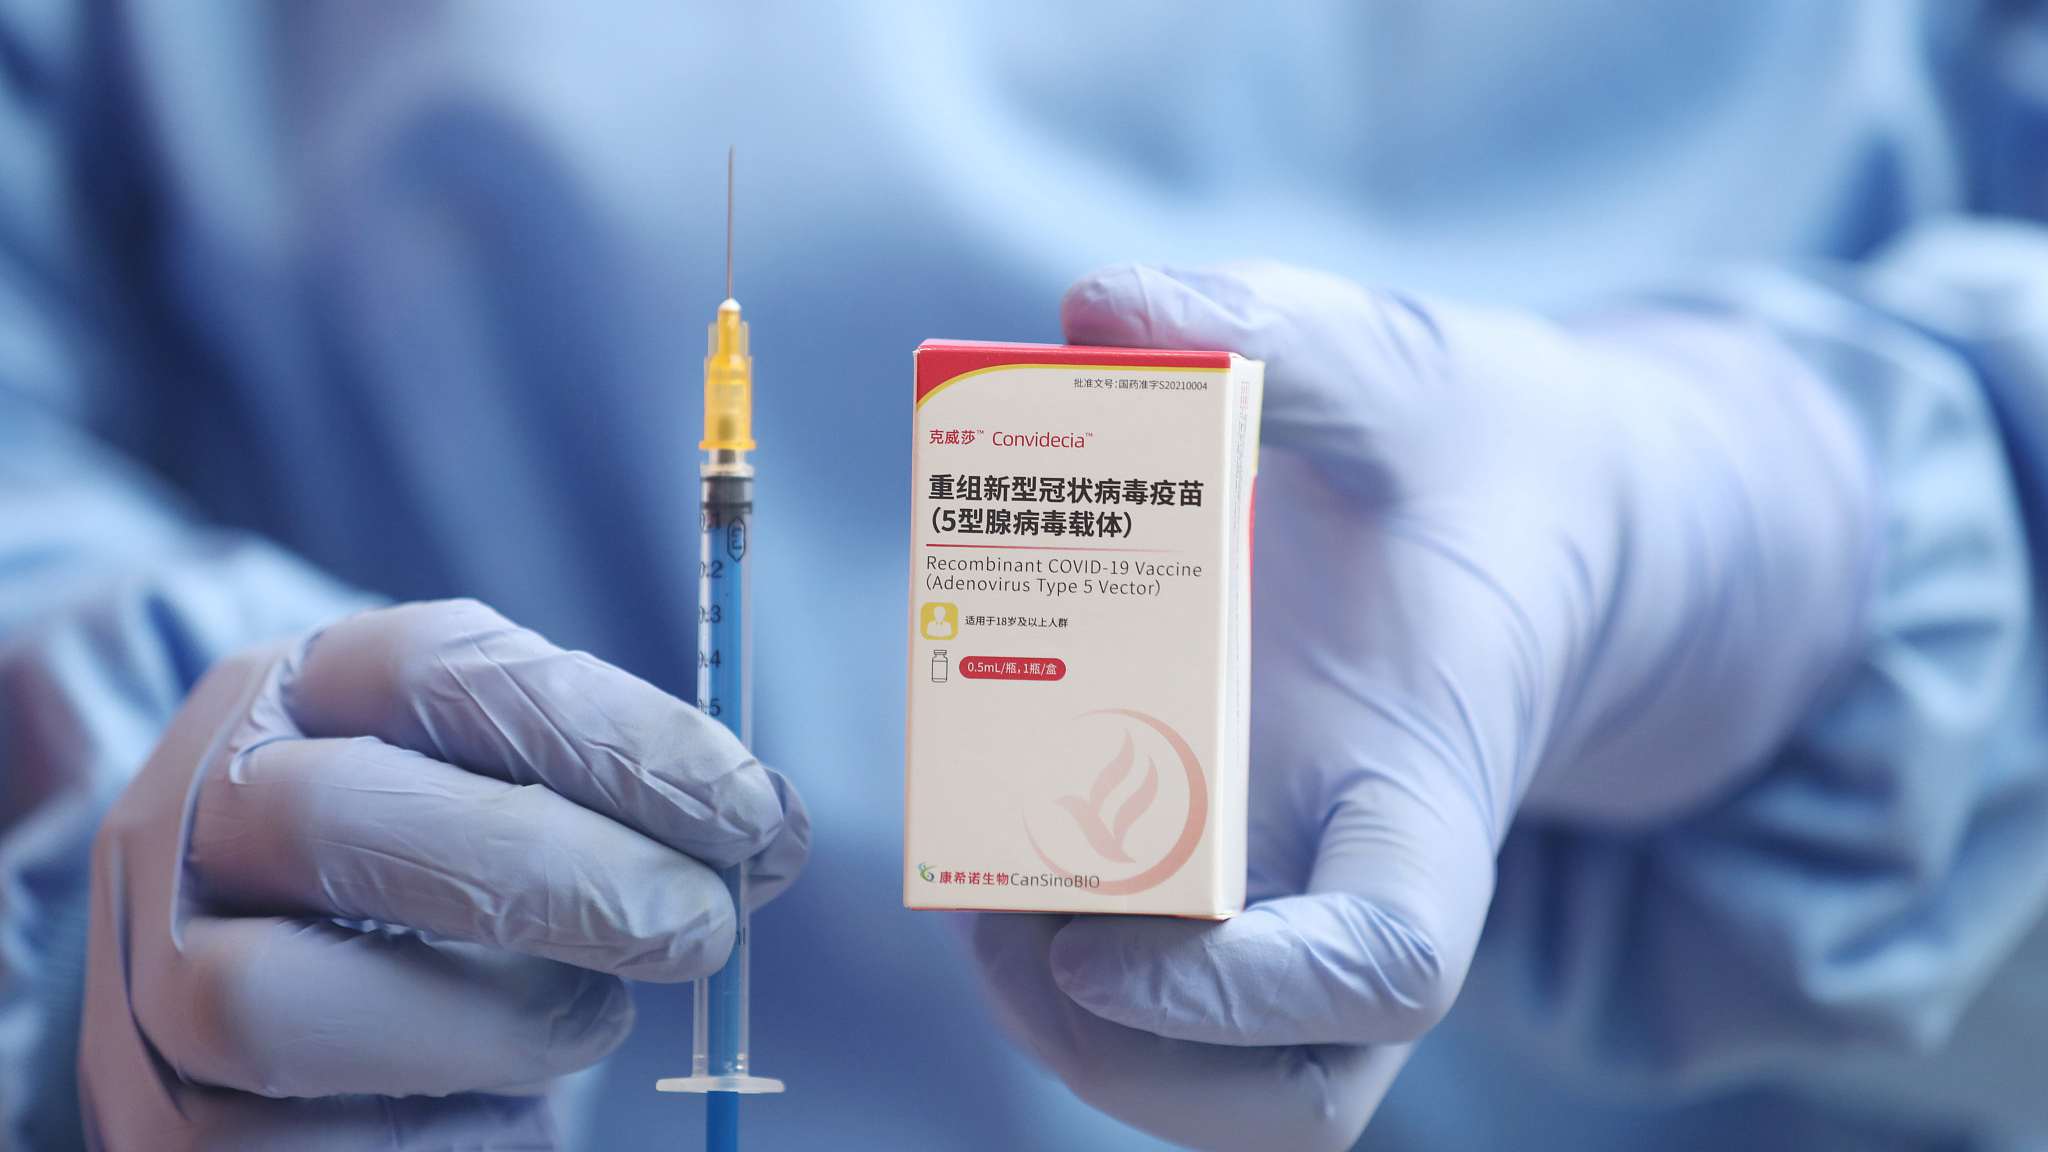 Neporabljenih ostalo za skoraj 30 milijonov evrov odmerkov cepiva proti covidu-19